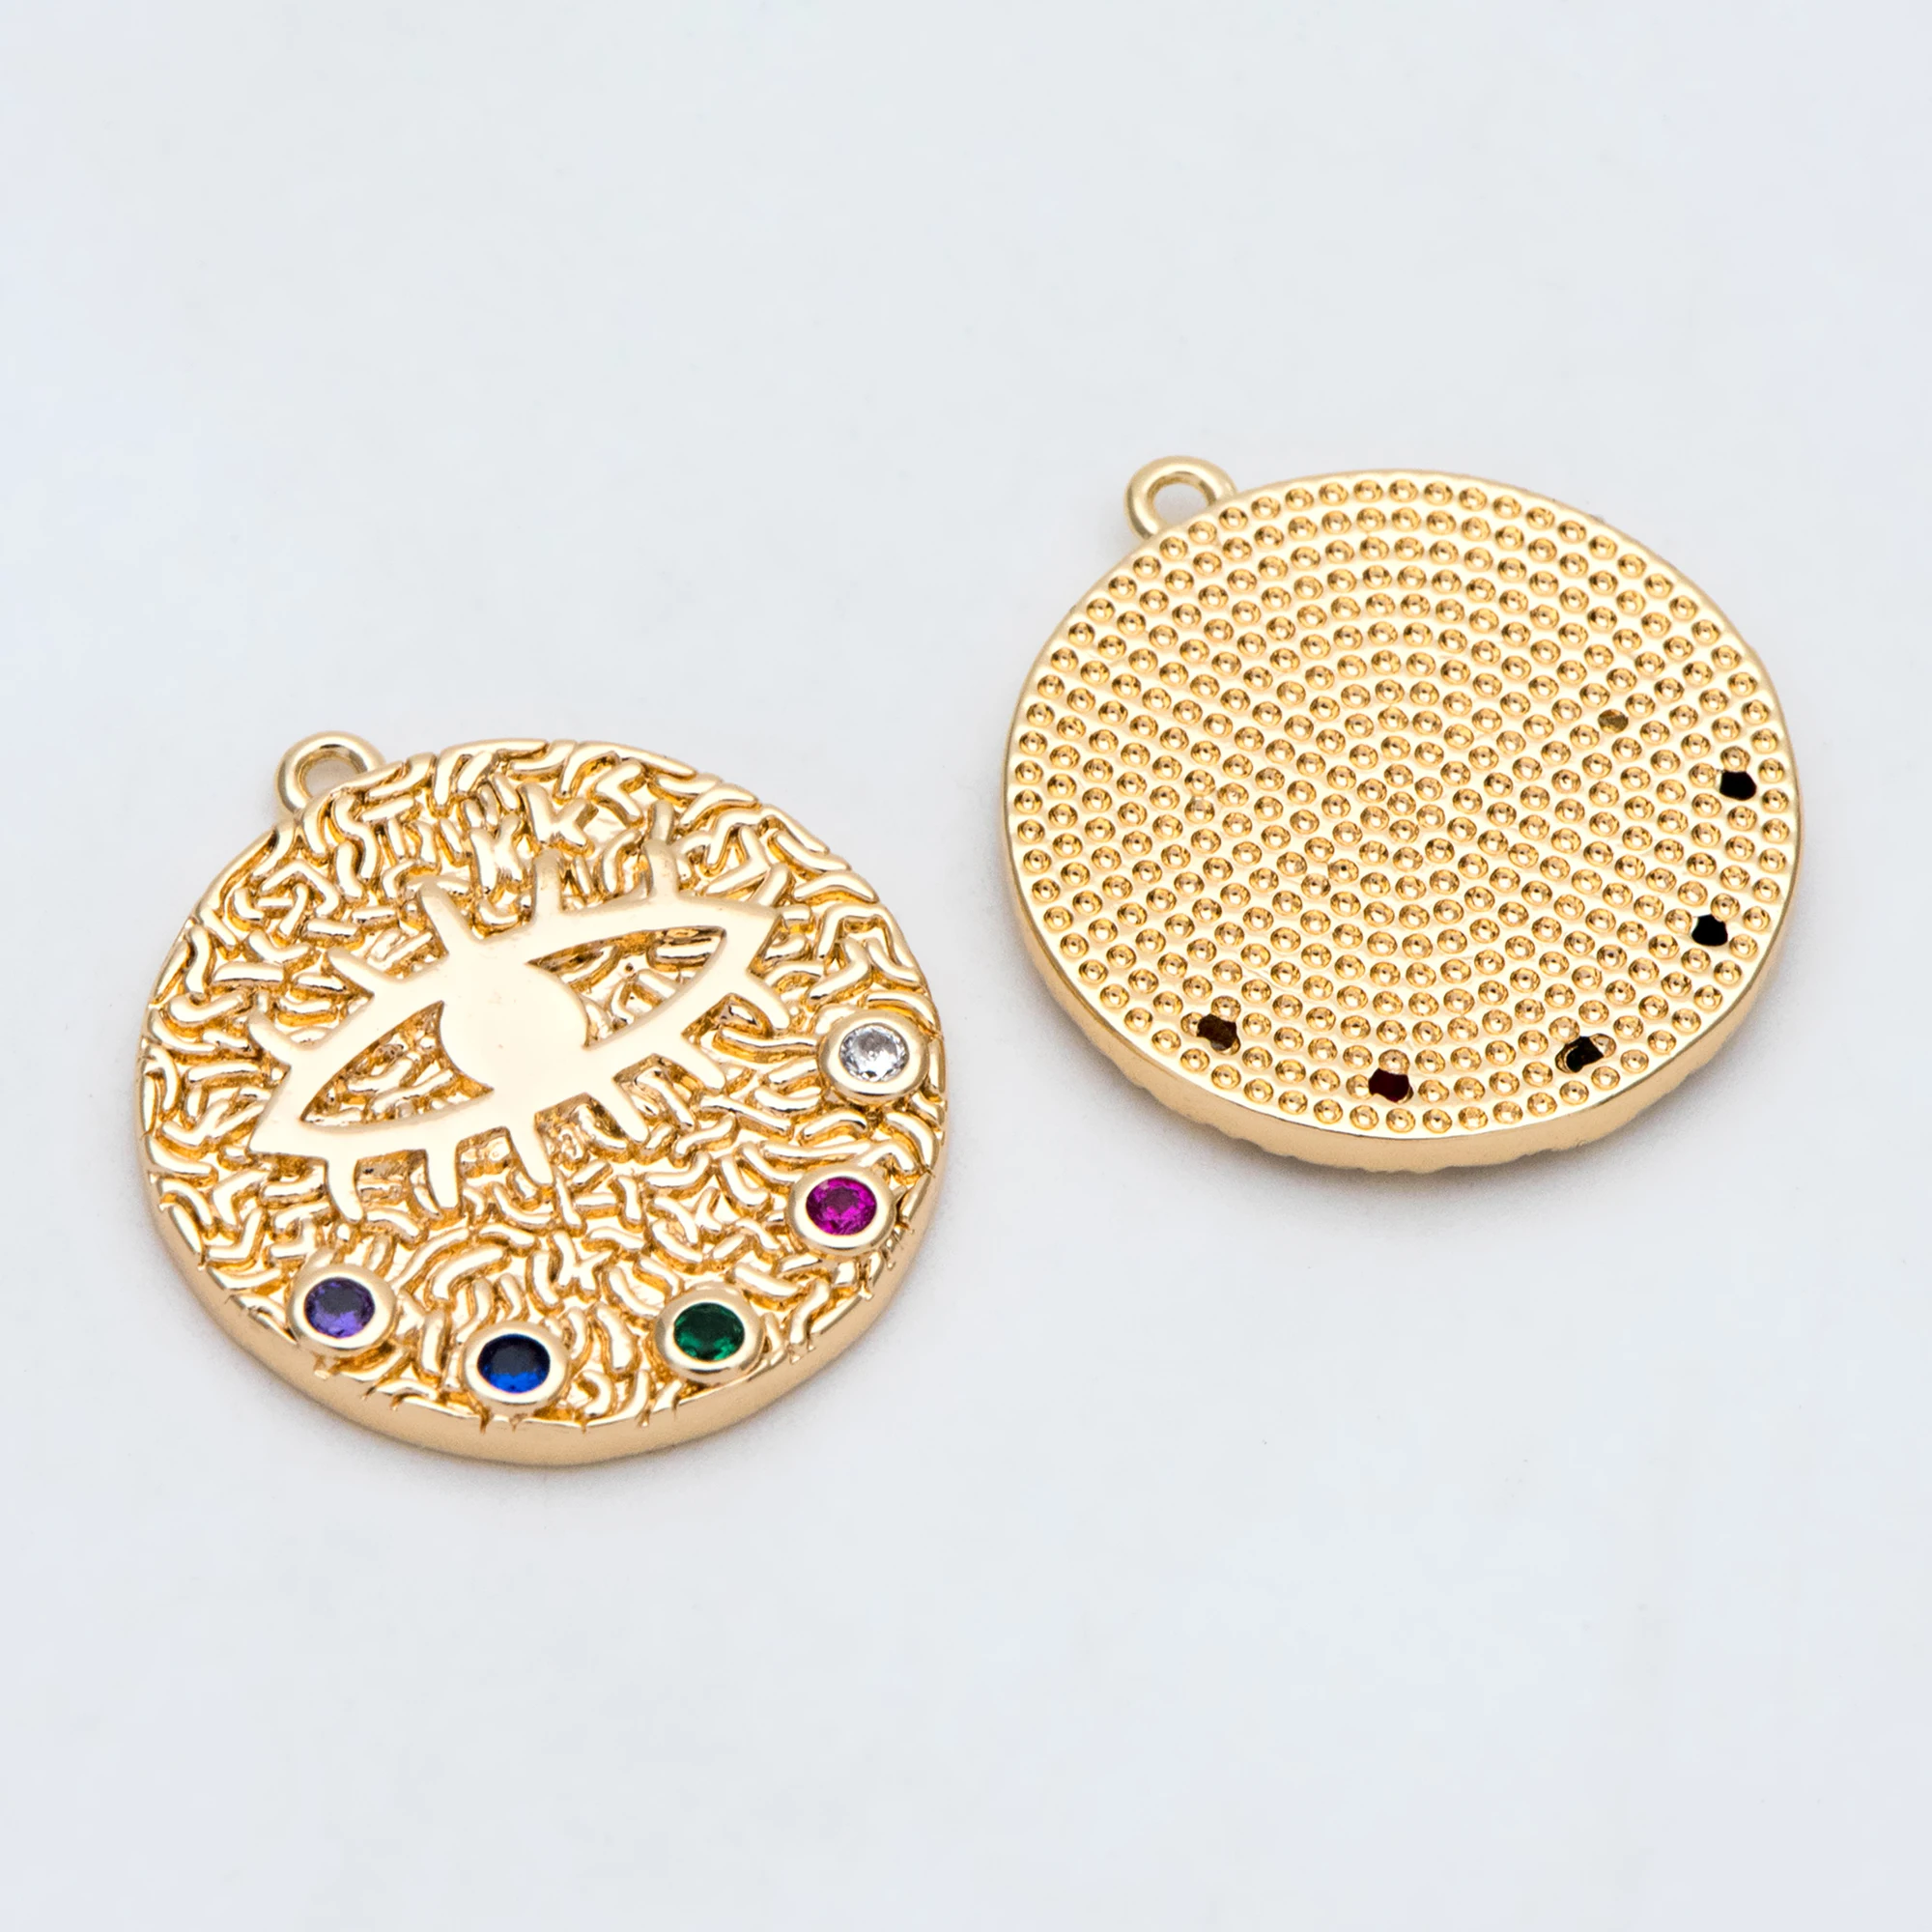 подвеска от сглаза 4шт, красочный Золотой диск с покрытием CZ, медальон с греческим глазом для защиты ювелирного компонента (GB-2937)